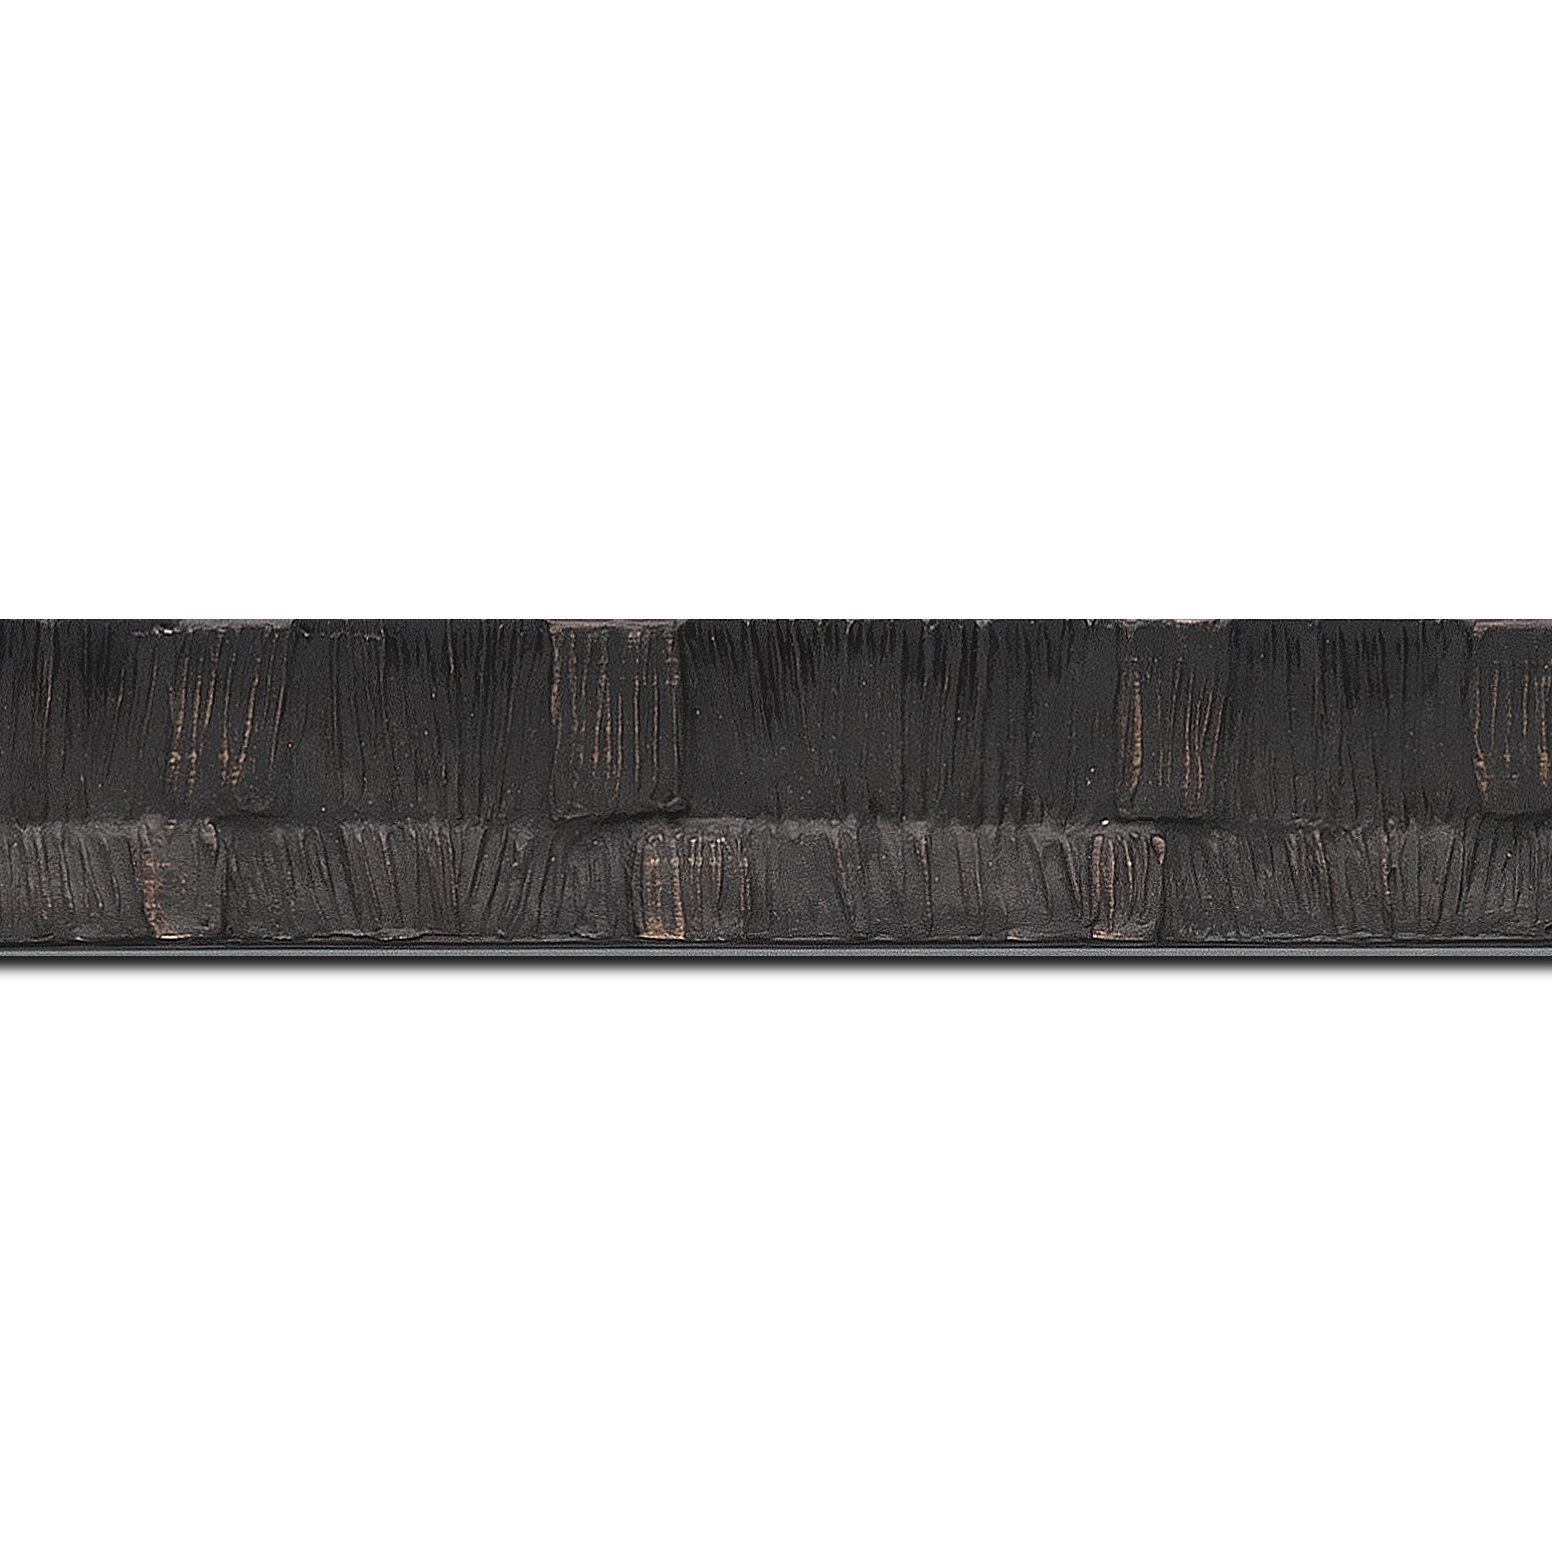 Pack par 12m, bois profil incurvé largeur 3cm  couleur noir ébène finition ethnique (longueur baguette pouvant varier entre 2.40m et 3m selon arrivage des bois)